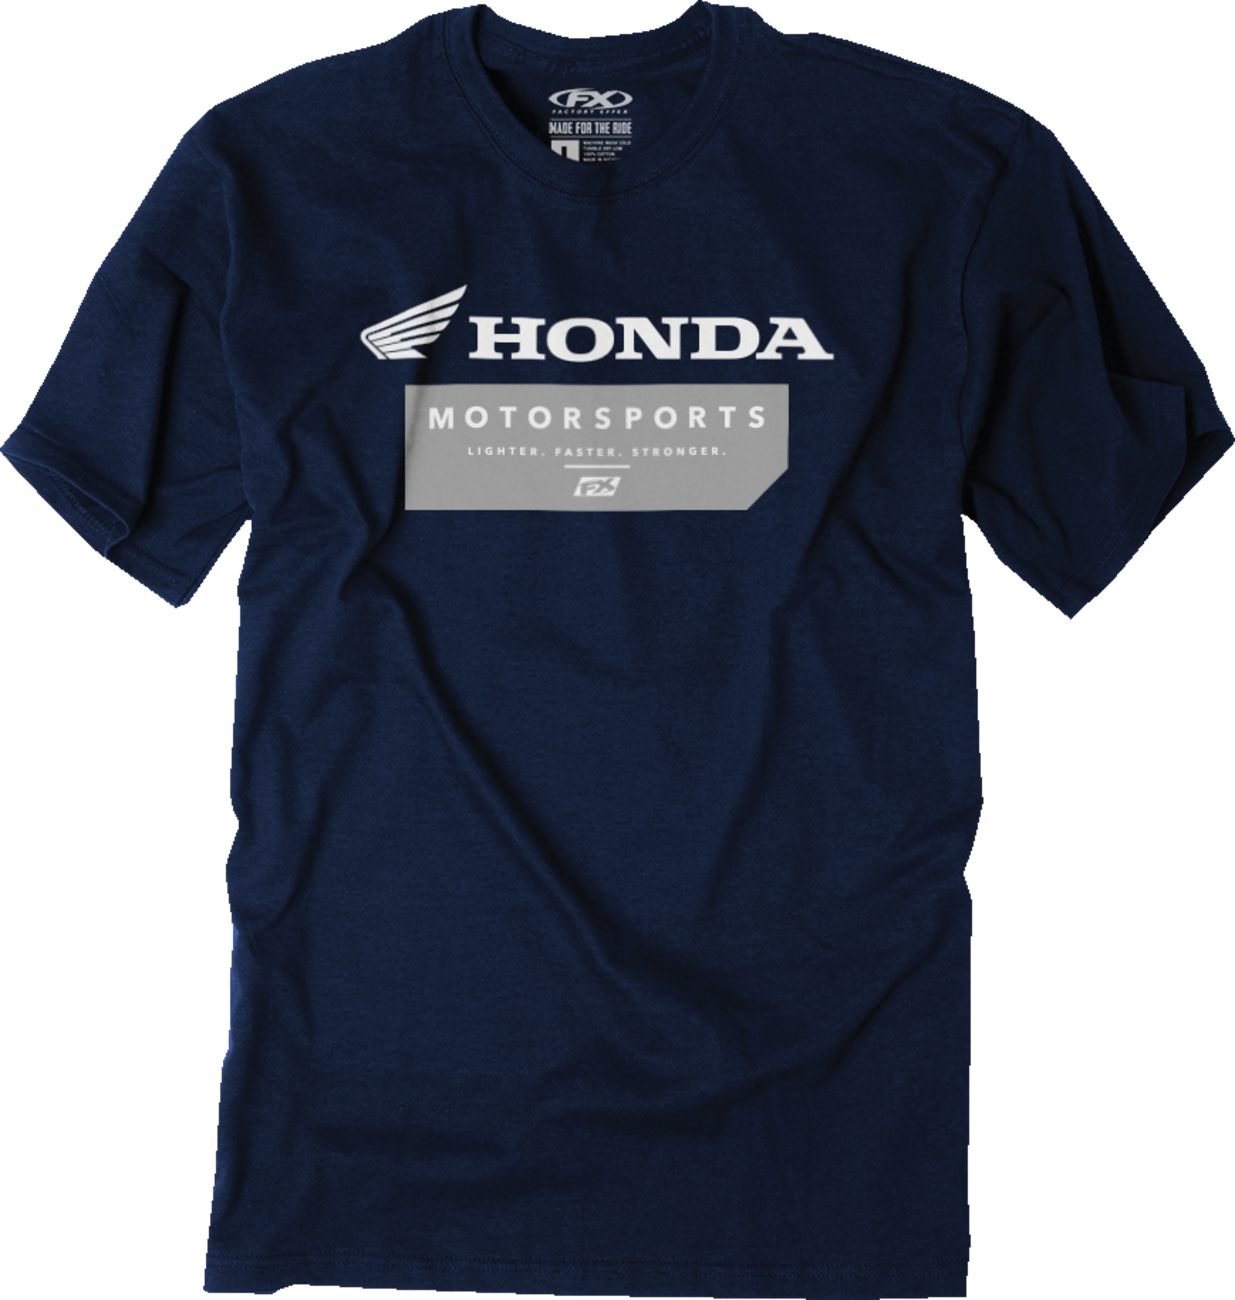 FACTORY EFFEX Honda Mission T-Shirt - Navy - Medium 26-87302